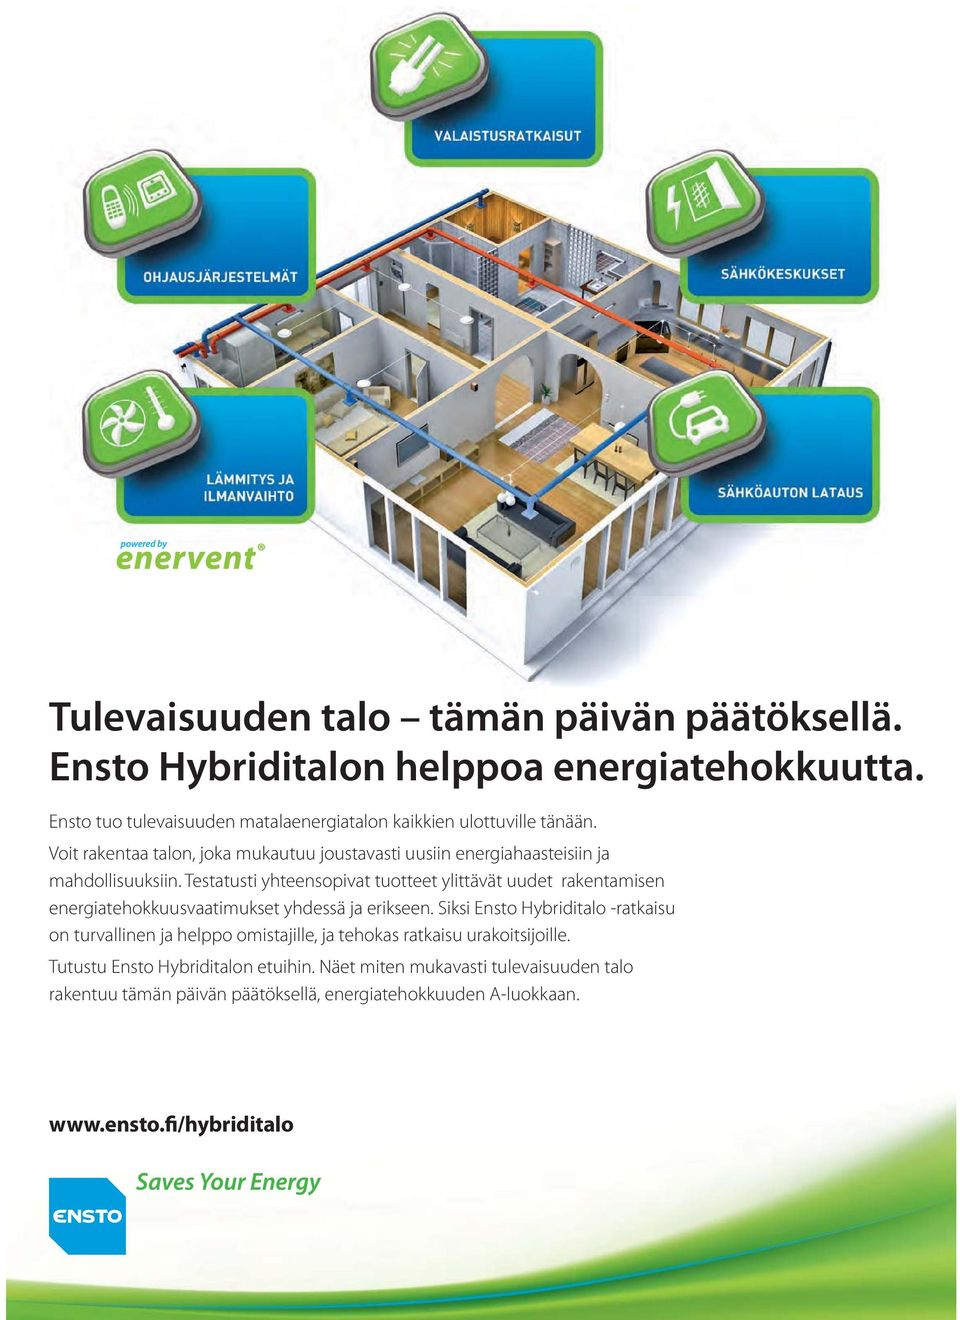 Voit rakentaa talon, joka mukautuu joustavasti uusiin energiahaasteisiin ja mahdollisuuksiin.